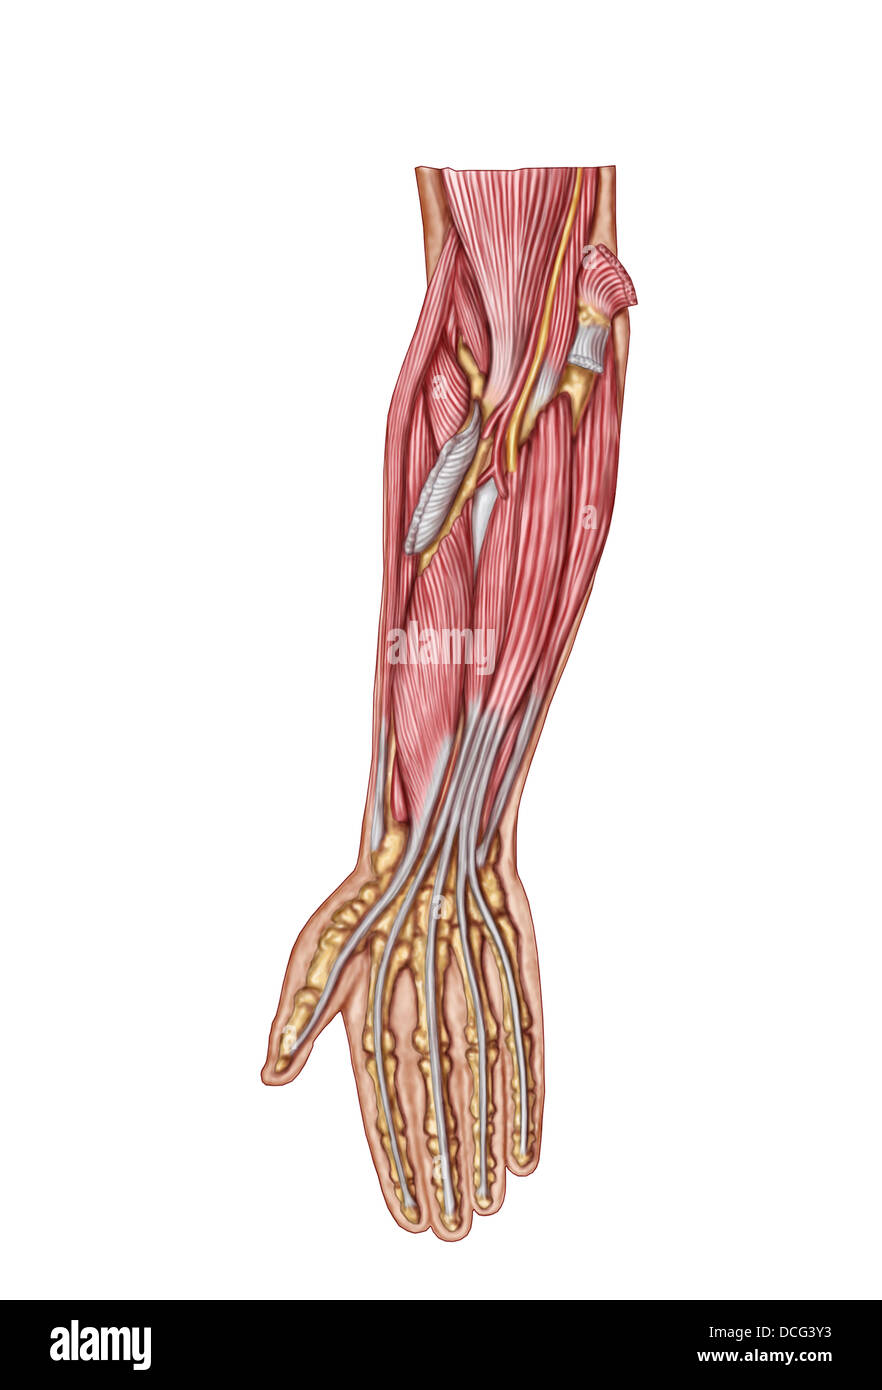 Anatomia di avambraccio umano i muscoli, deep vista anteriore. Foto Stock